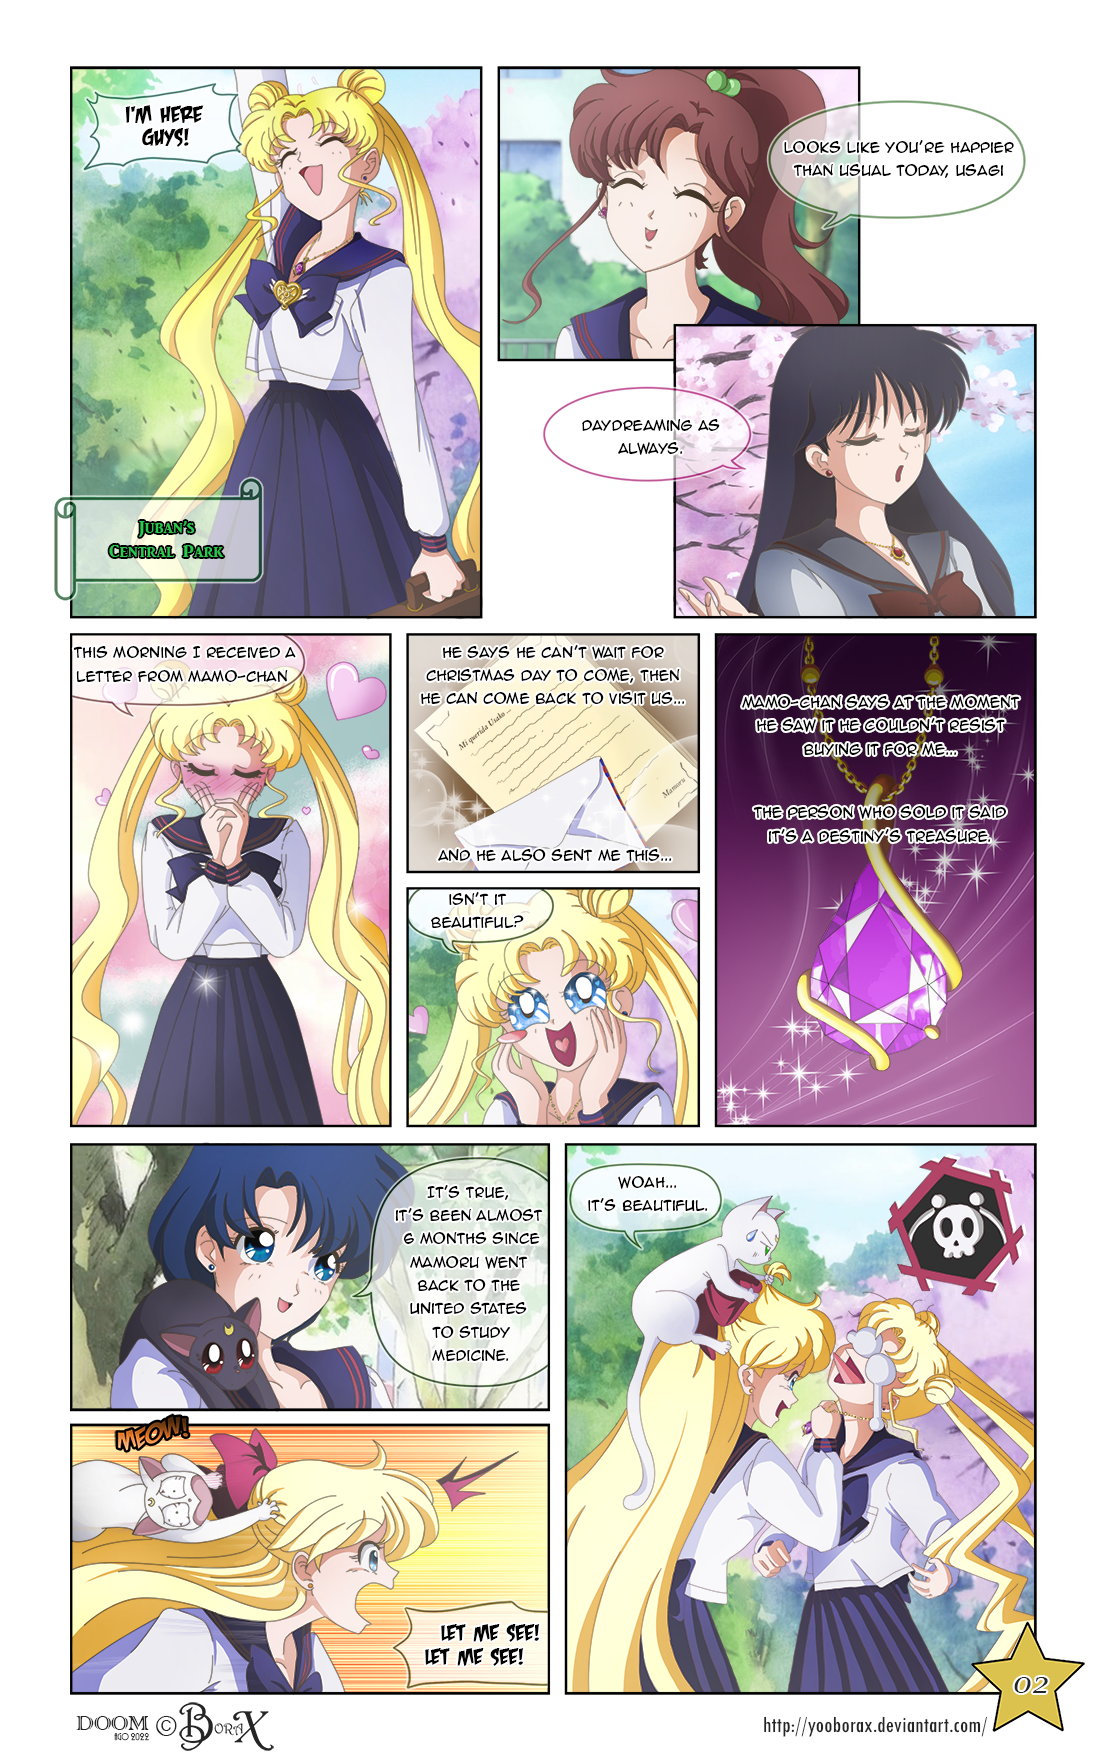 Sailor Moon Pink Crystal by Mangaka-chan on DeviantArt